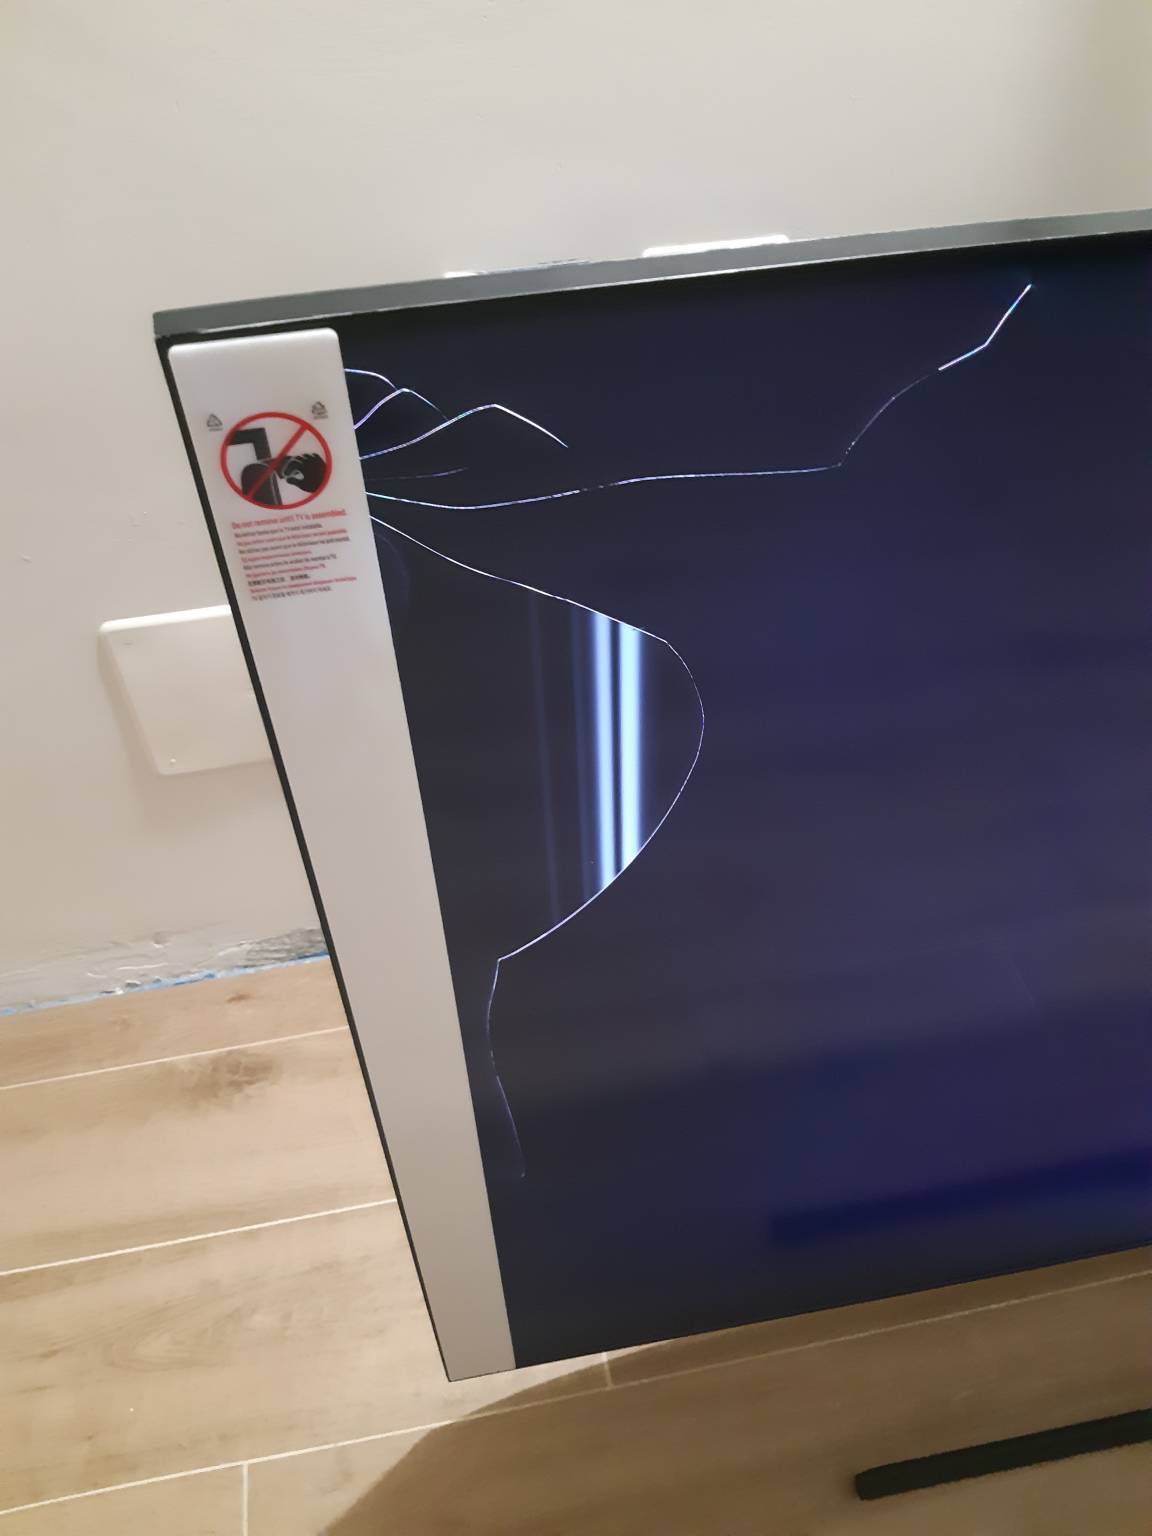 TV q70t rotto appena comprato - Samsung Community